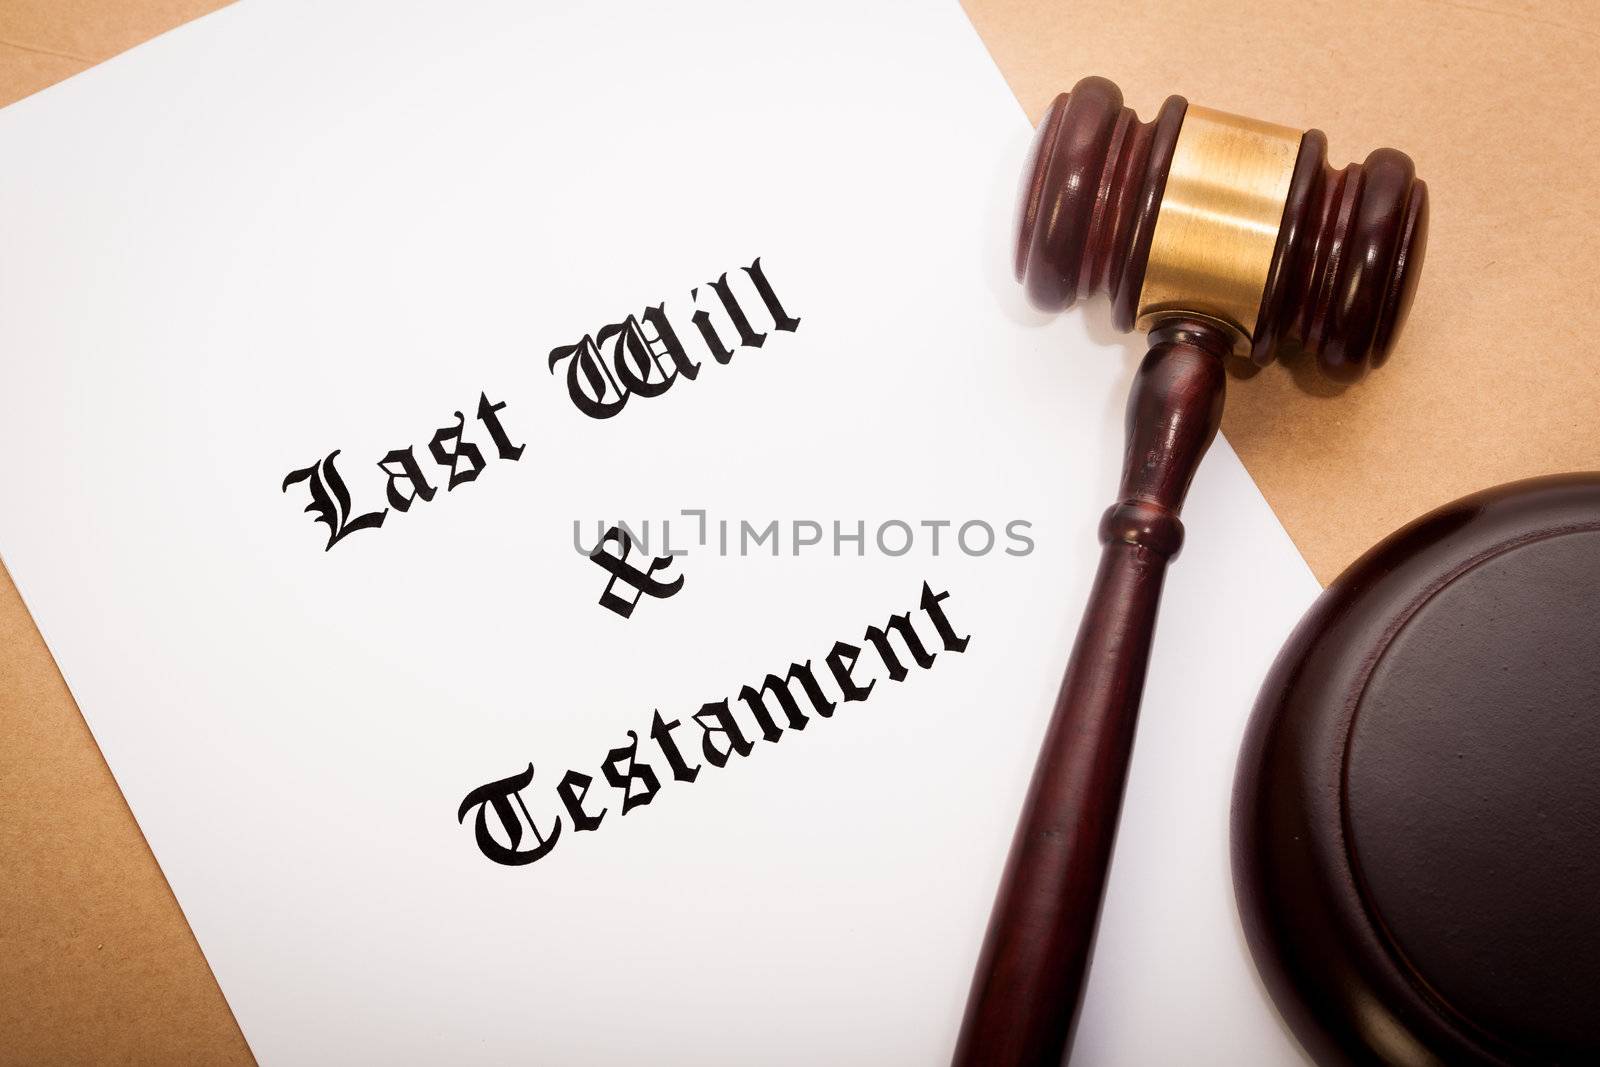 Last Will and Testament by Daniel_Wiedemann